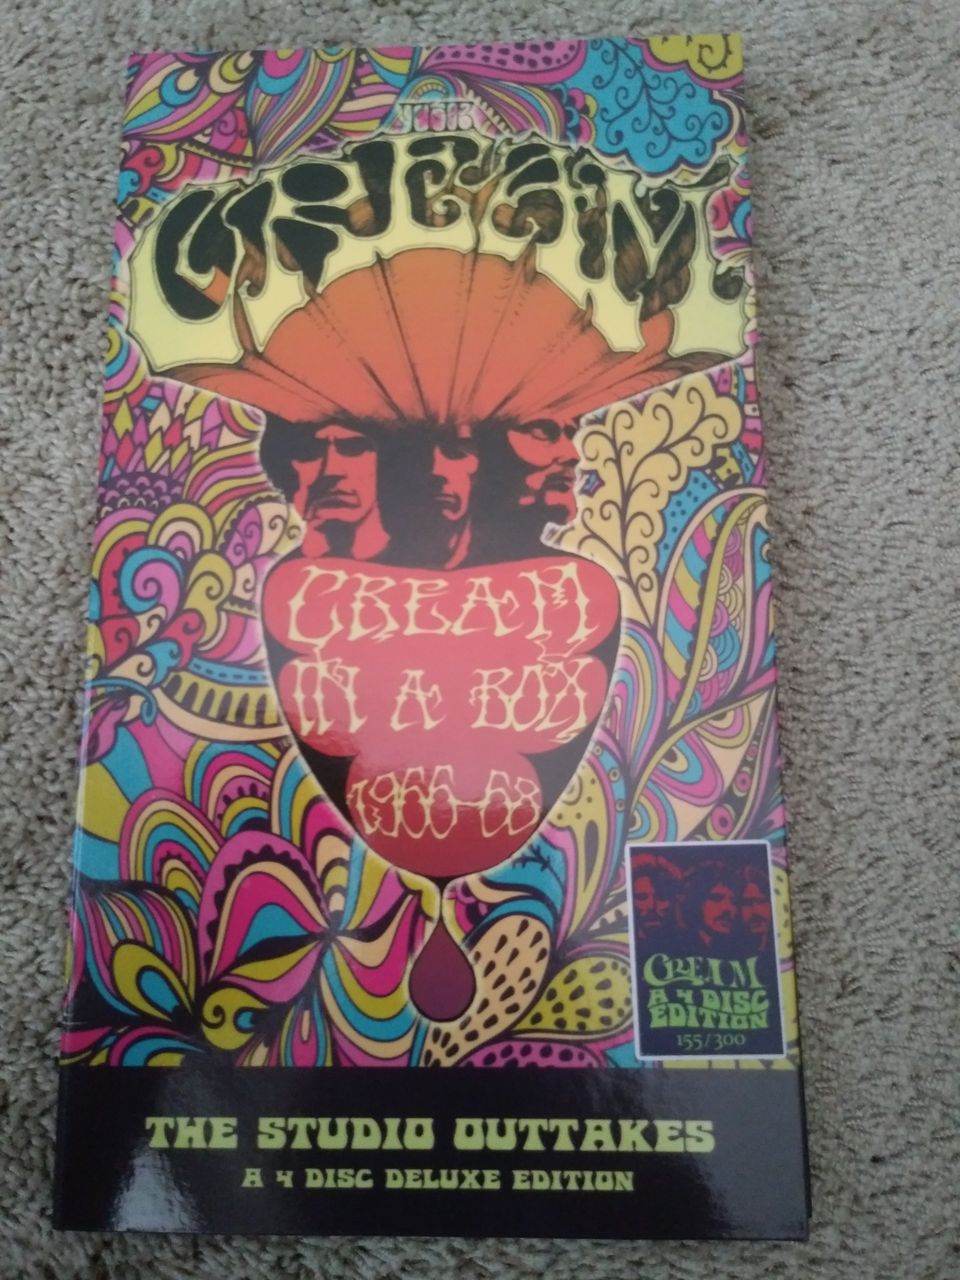 Cream: Cream In A Box, 4-CD:n boxi.